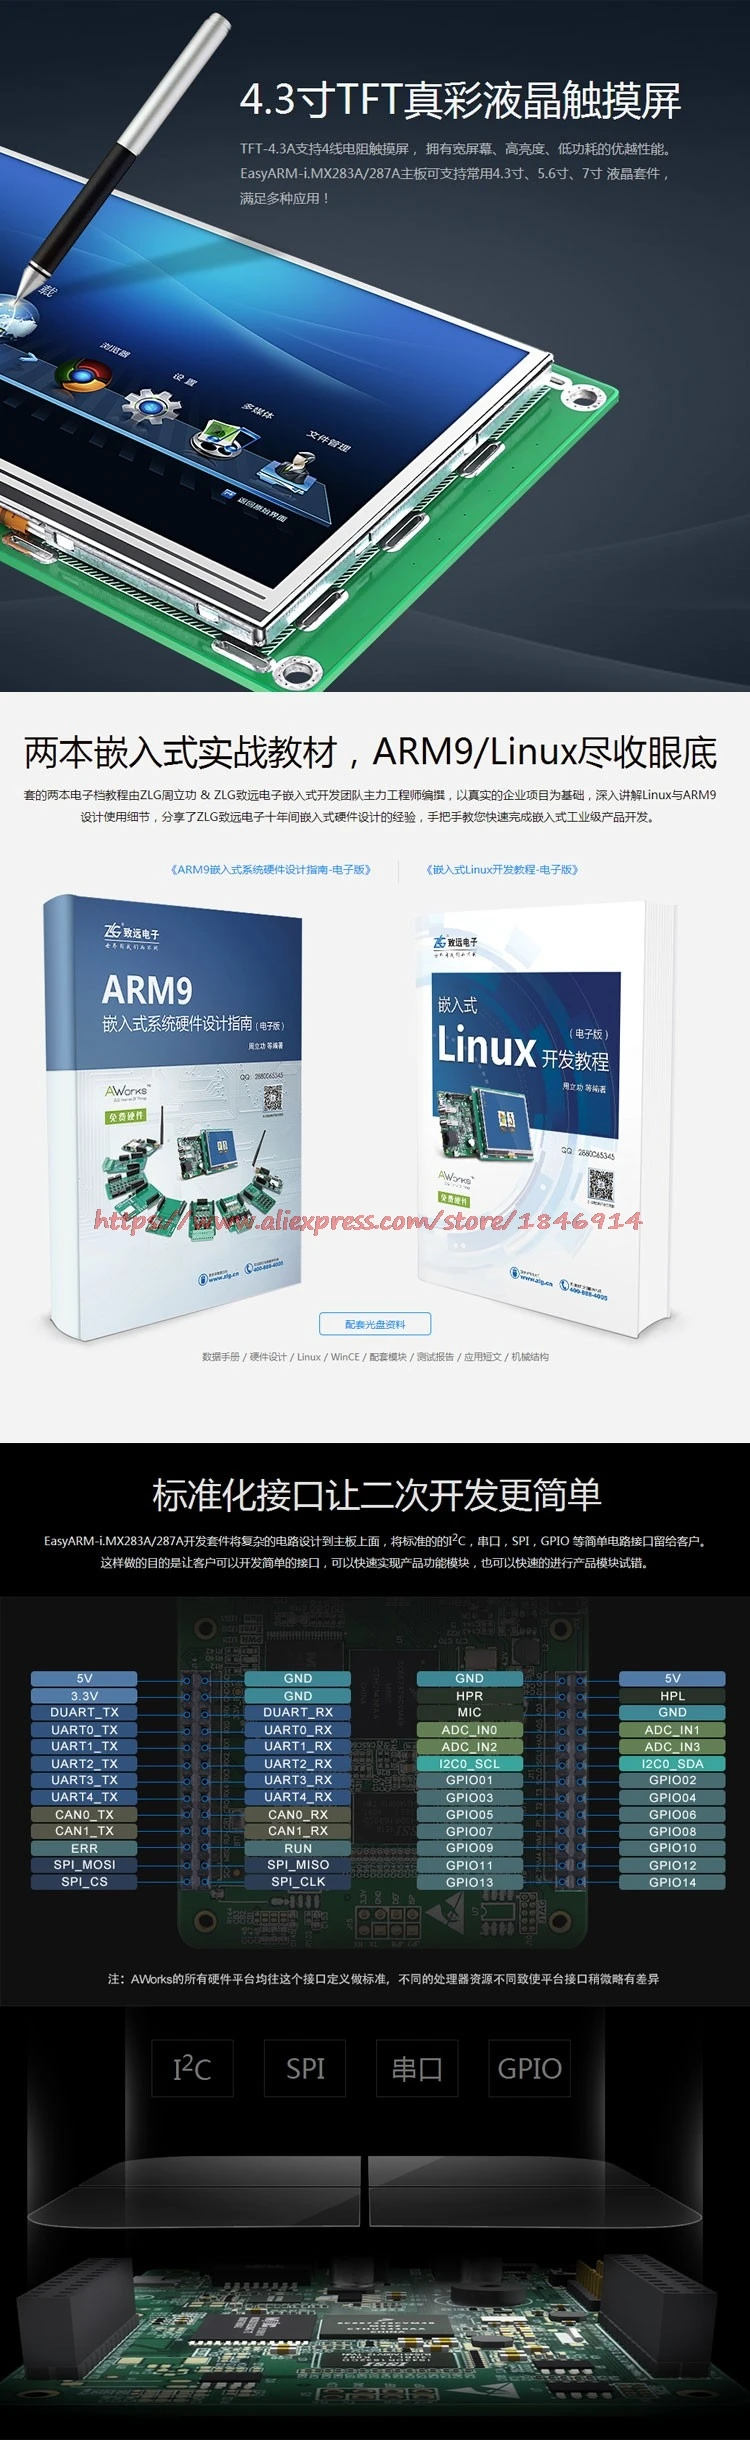 Бесплатная доставка адело платформы ARM9 Совет по развитию I. mx283a сенсорный экран